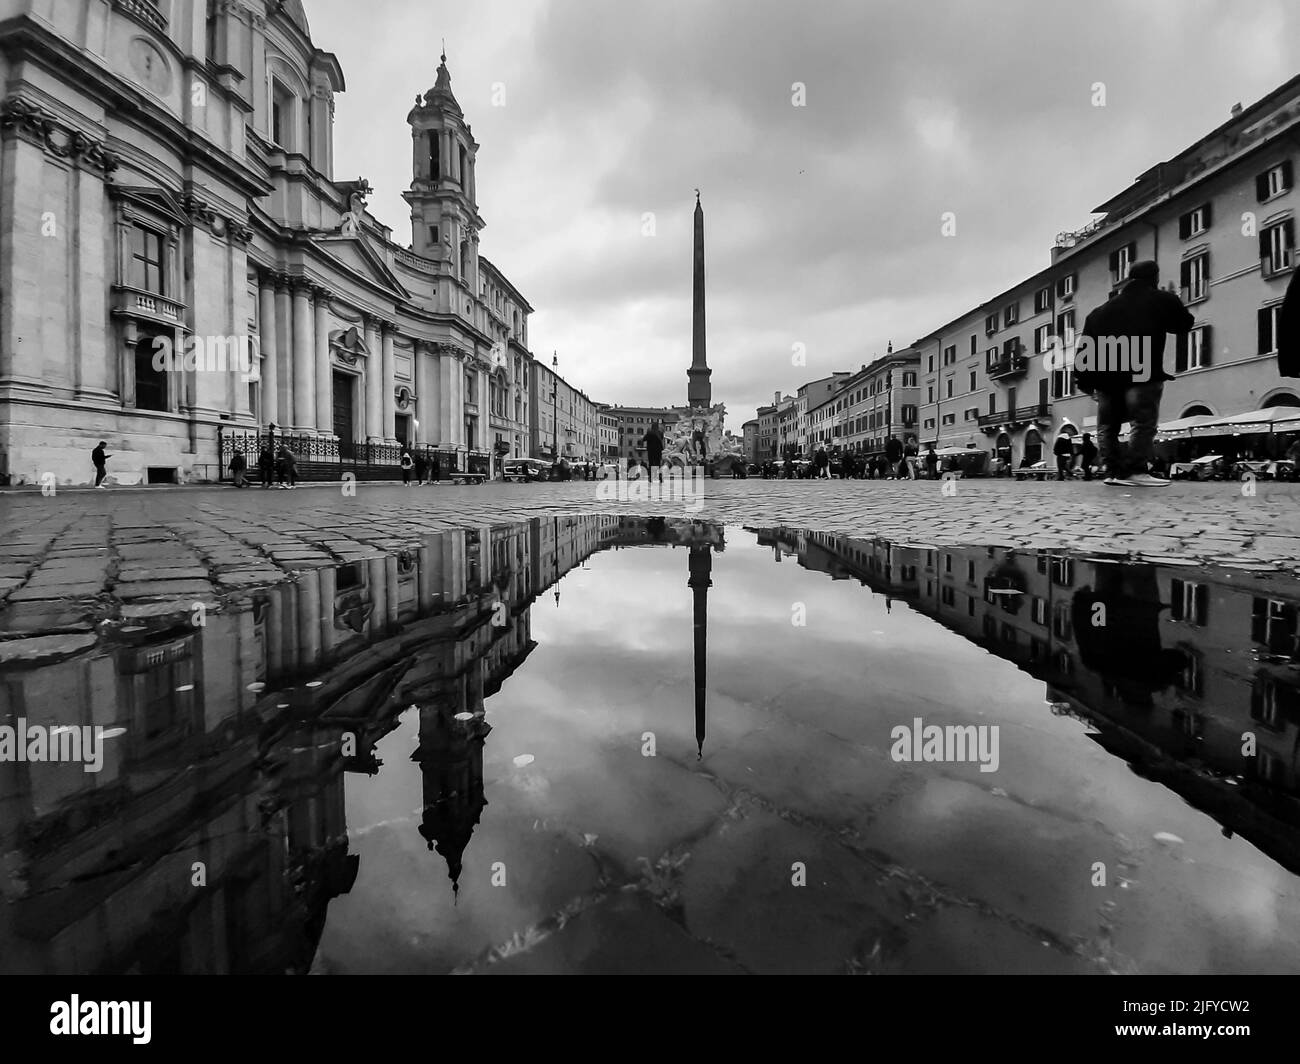 Rome, Italie, mars 2022. Image en noir et blanc de la magnifique place Navona à Rome. Bâtiments à l'architecture magnifique. Banque D'Images